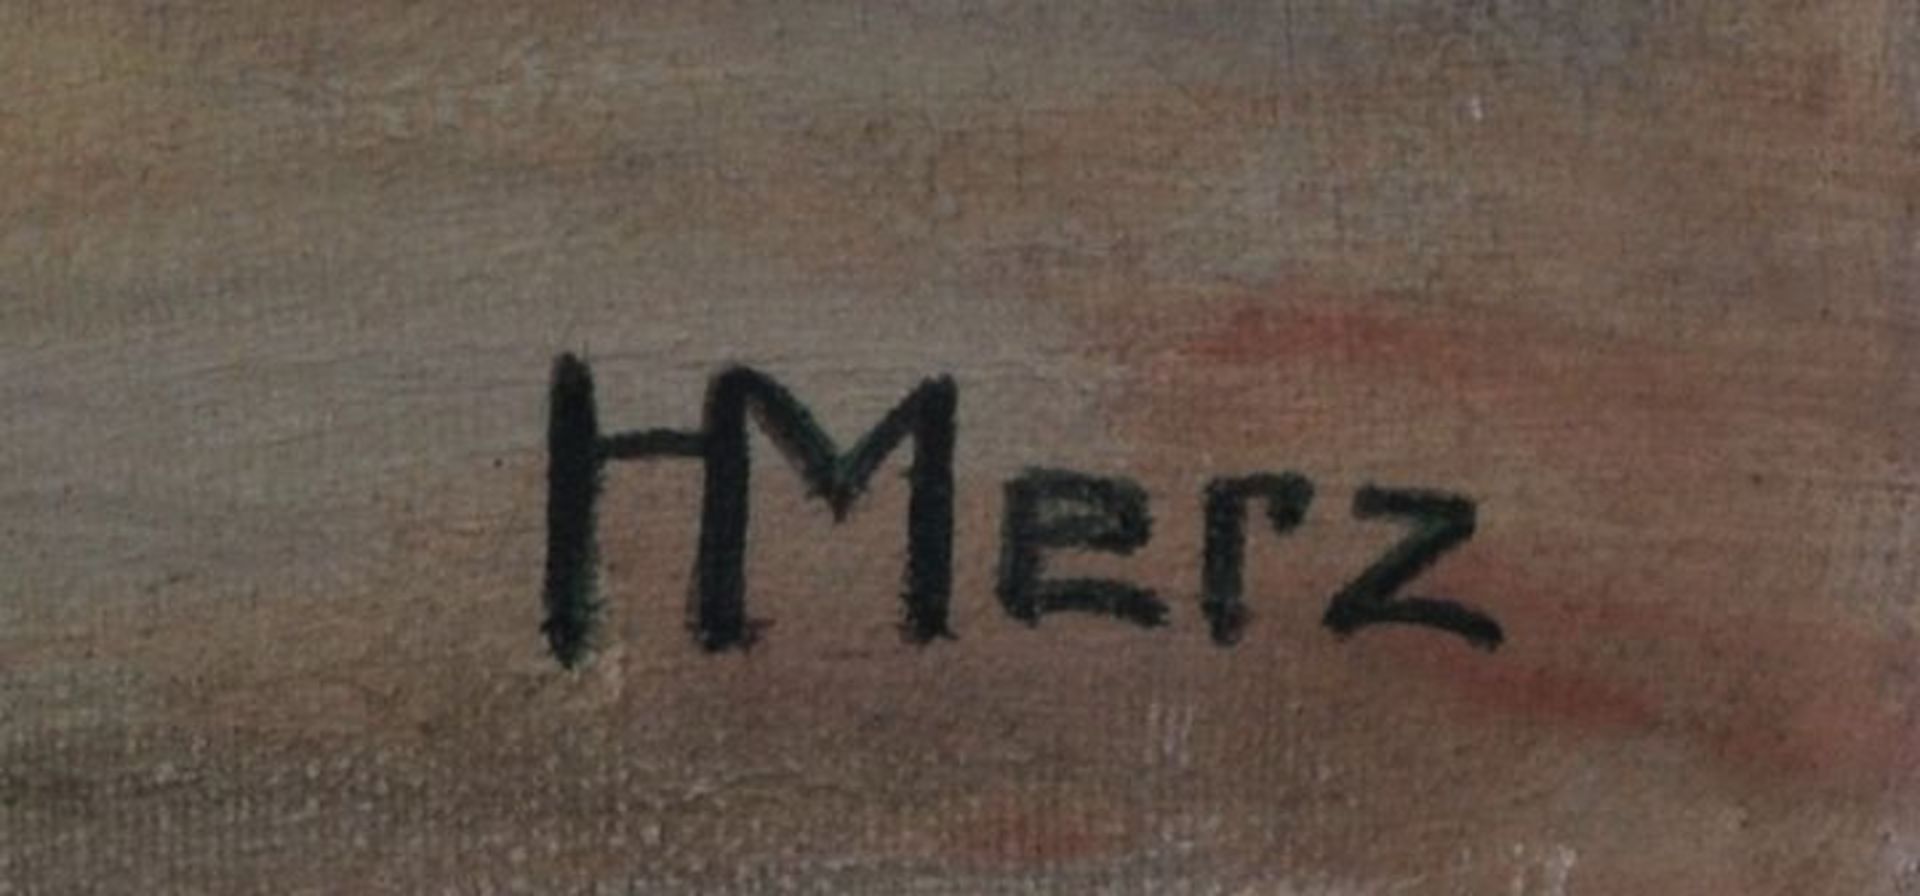 Merz, Helene - Image 2 of 2